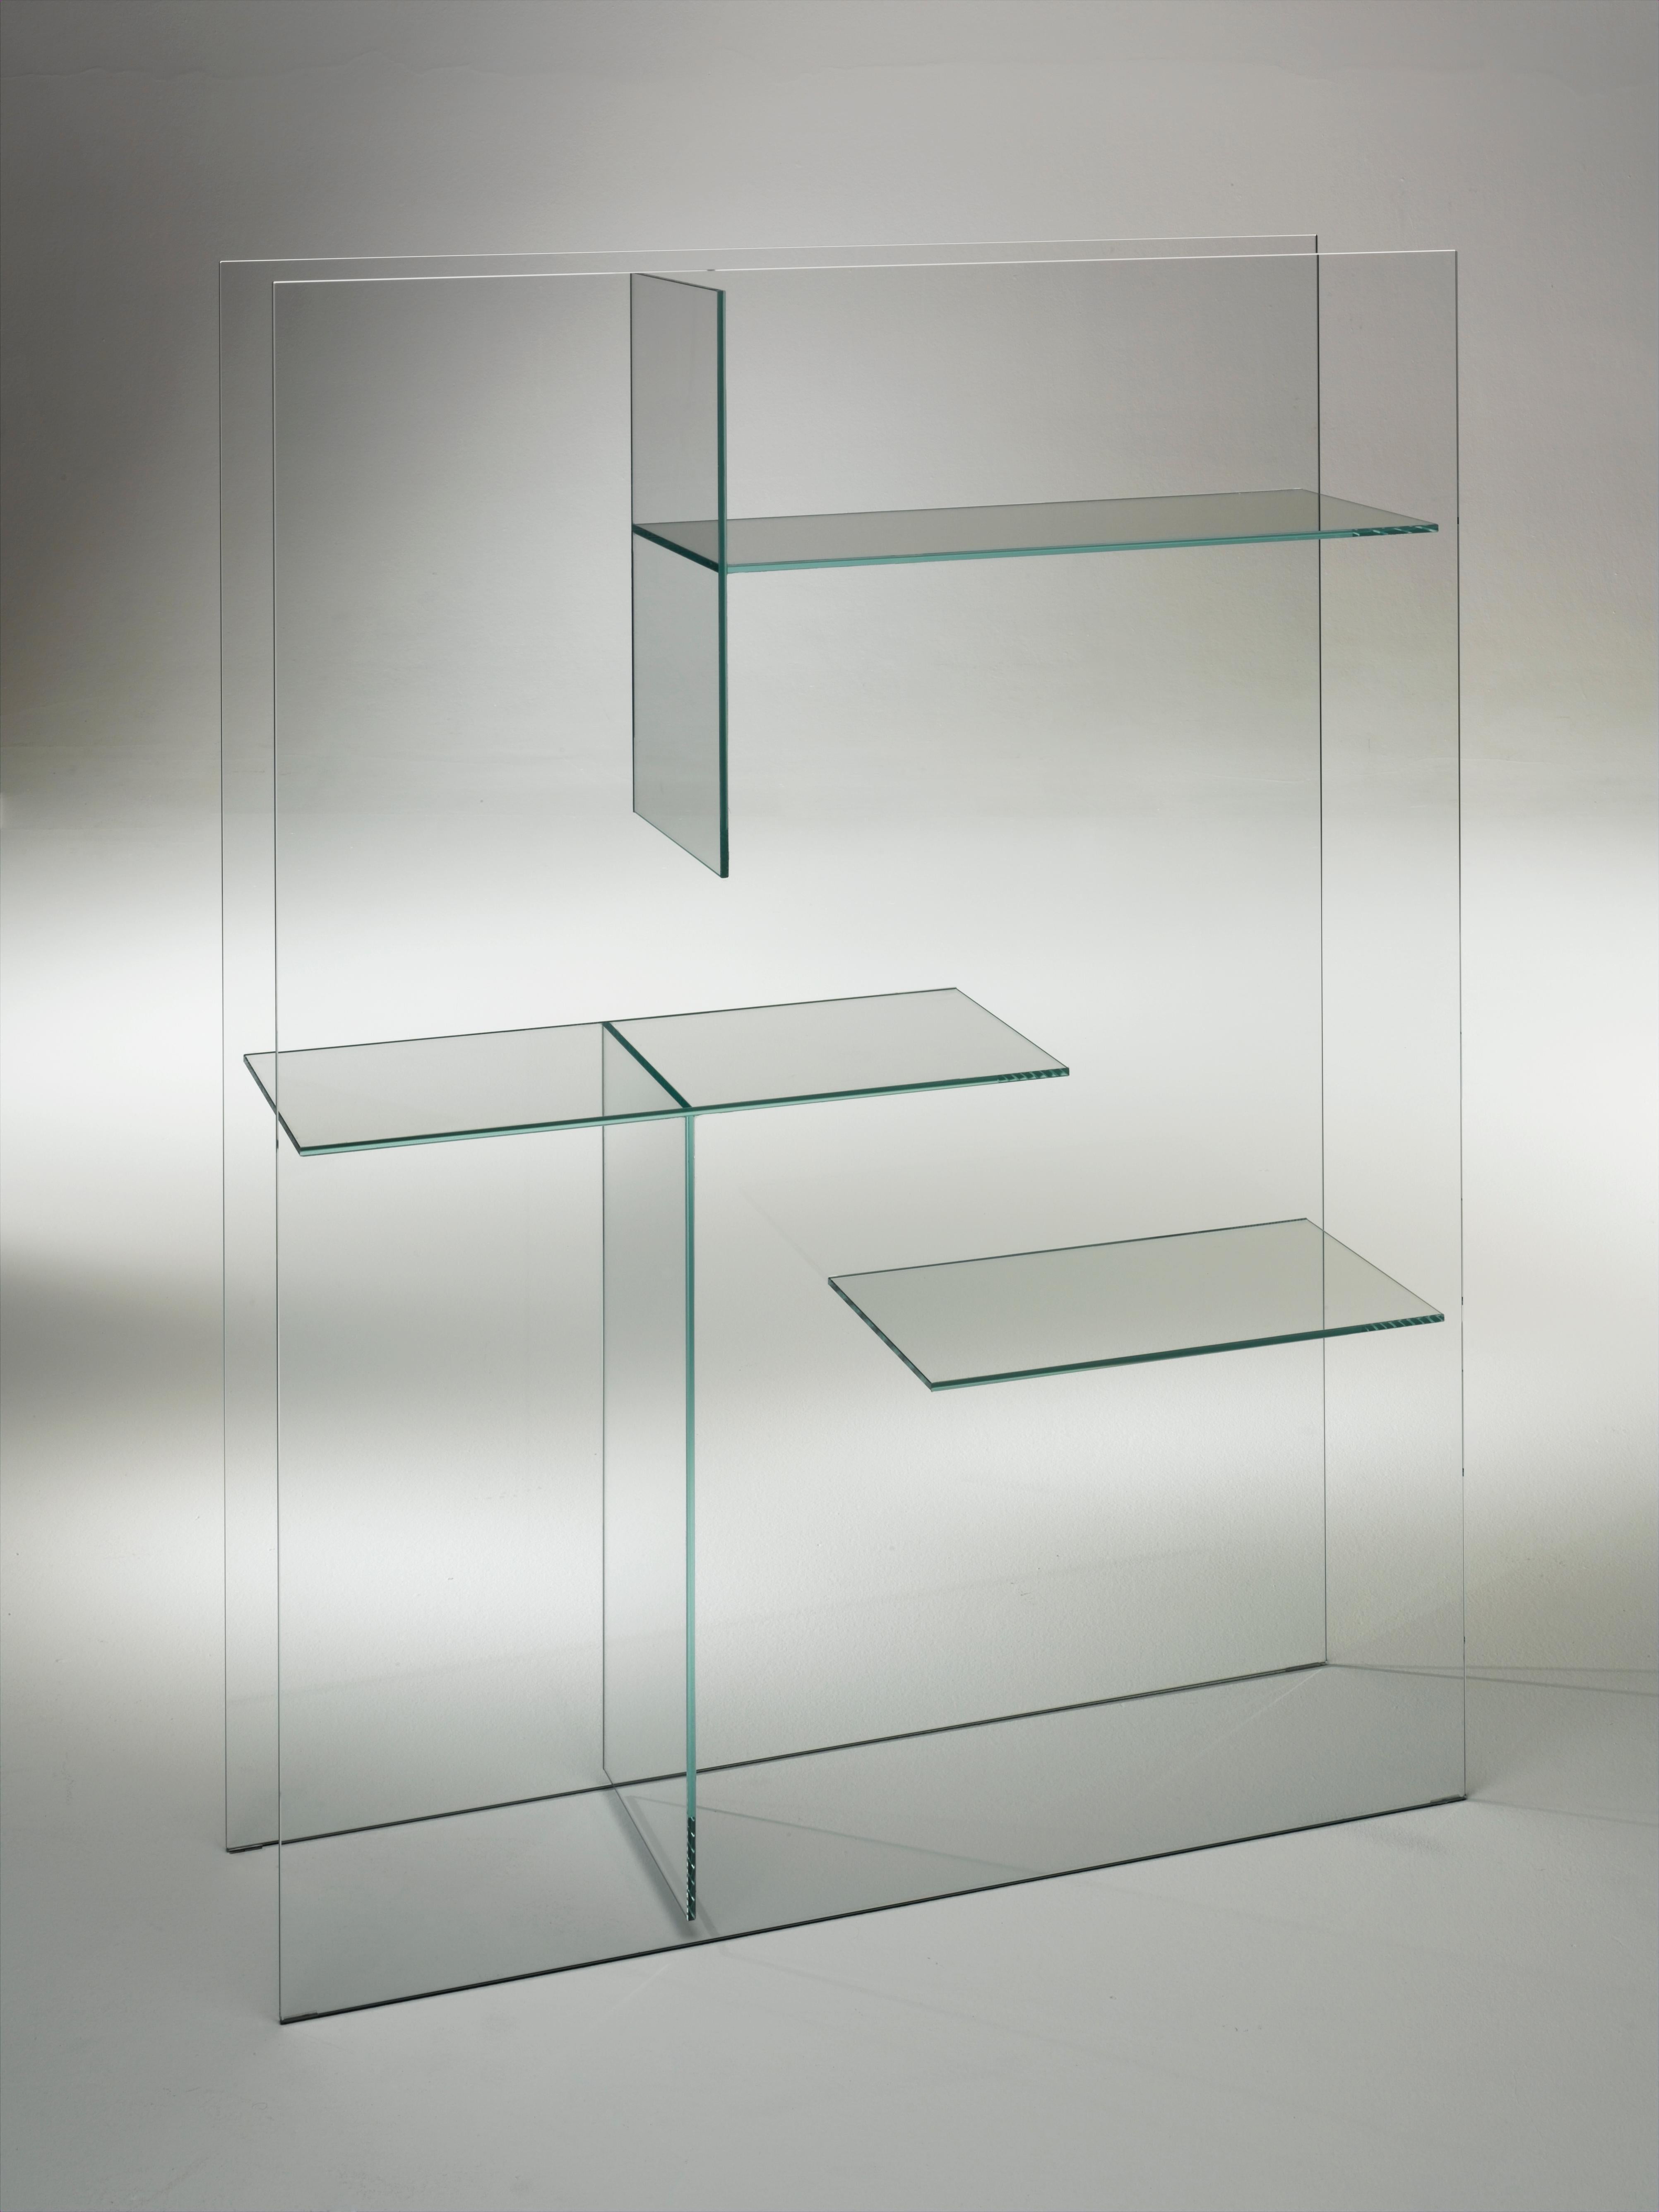 Le meuble de rangement Transfix est présenté ici dans le verre extralight transparent. Meuble d'exposition et de rangement et élément divisant et tamisant les espaces, obtenu par collage de dalles de verre feuilleté 5+5 mm. Disponible en verre